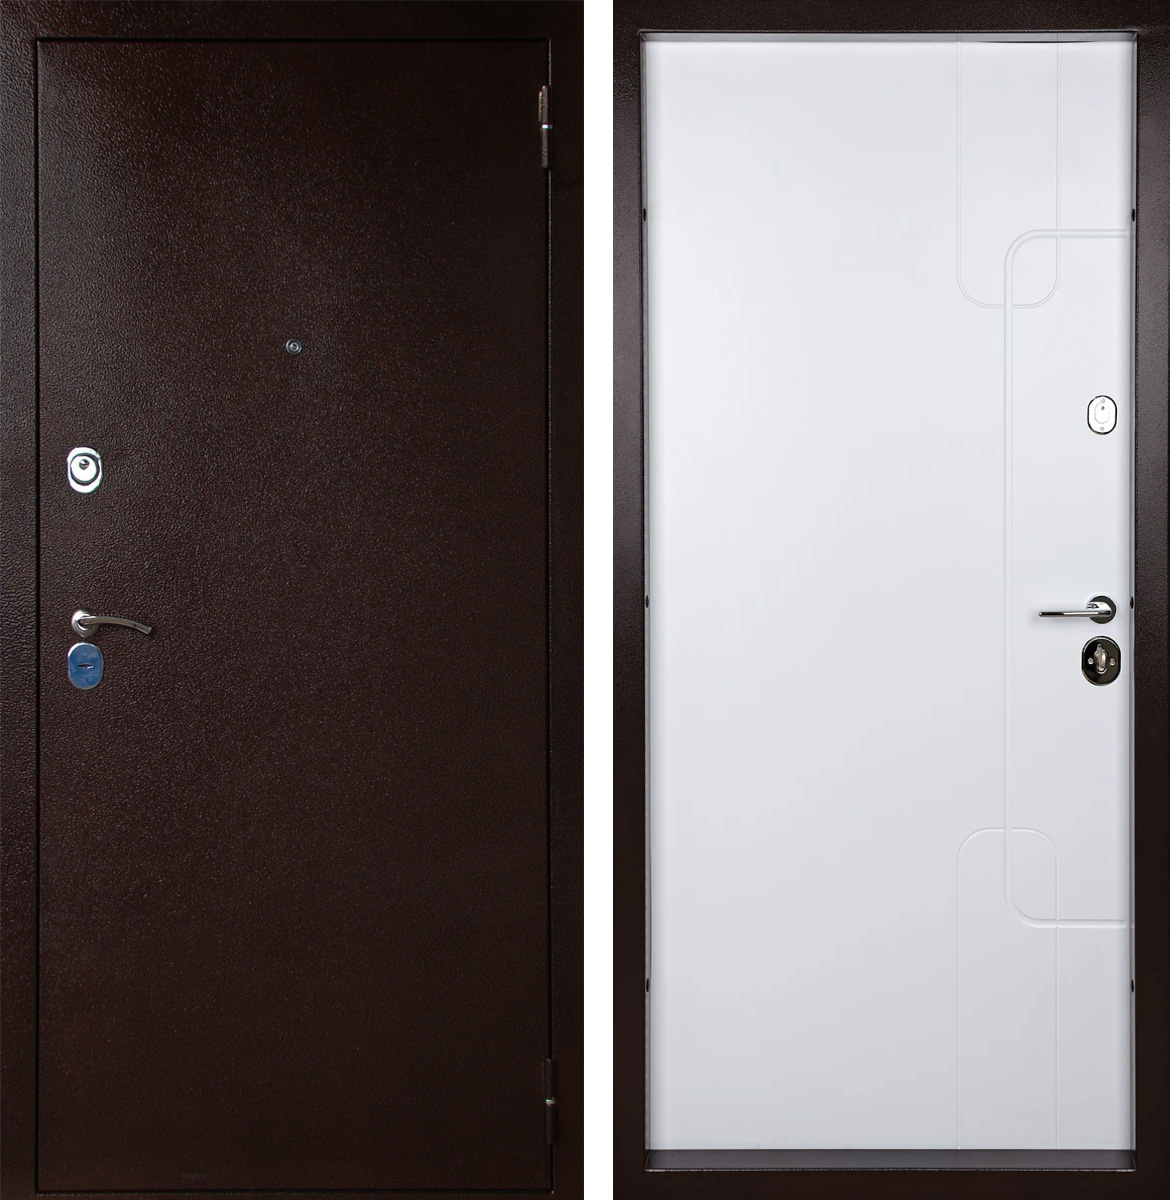 Металлическая входная дверь напыление и МДФ ЛД-778 с шумоизоляцией комфорт класса